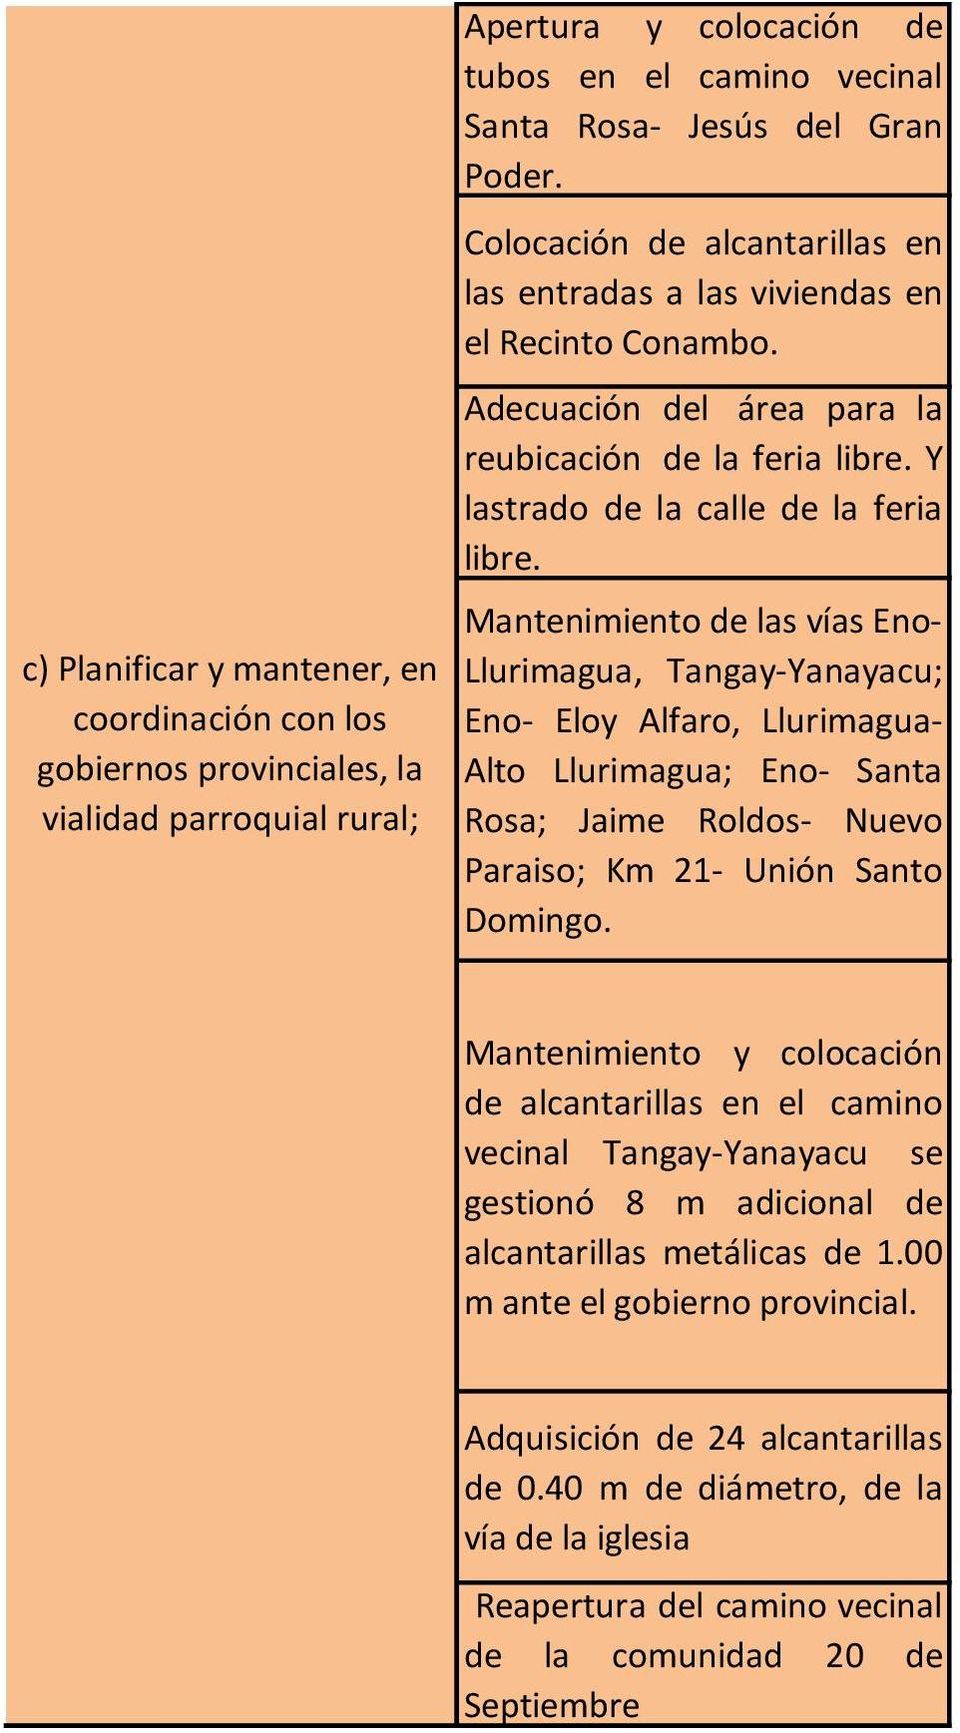 Mantenimiento de las vías Eno- Llurimagua, Tangay-Yanayacu; Eno- Eloy Alfaro, Llurimagua- Alto Llurimagua; Eno- Santa Rosa; Jaime Roldos- Nuevo Paraiso; Km 21- Unión Santo Domingo.